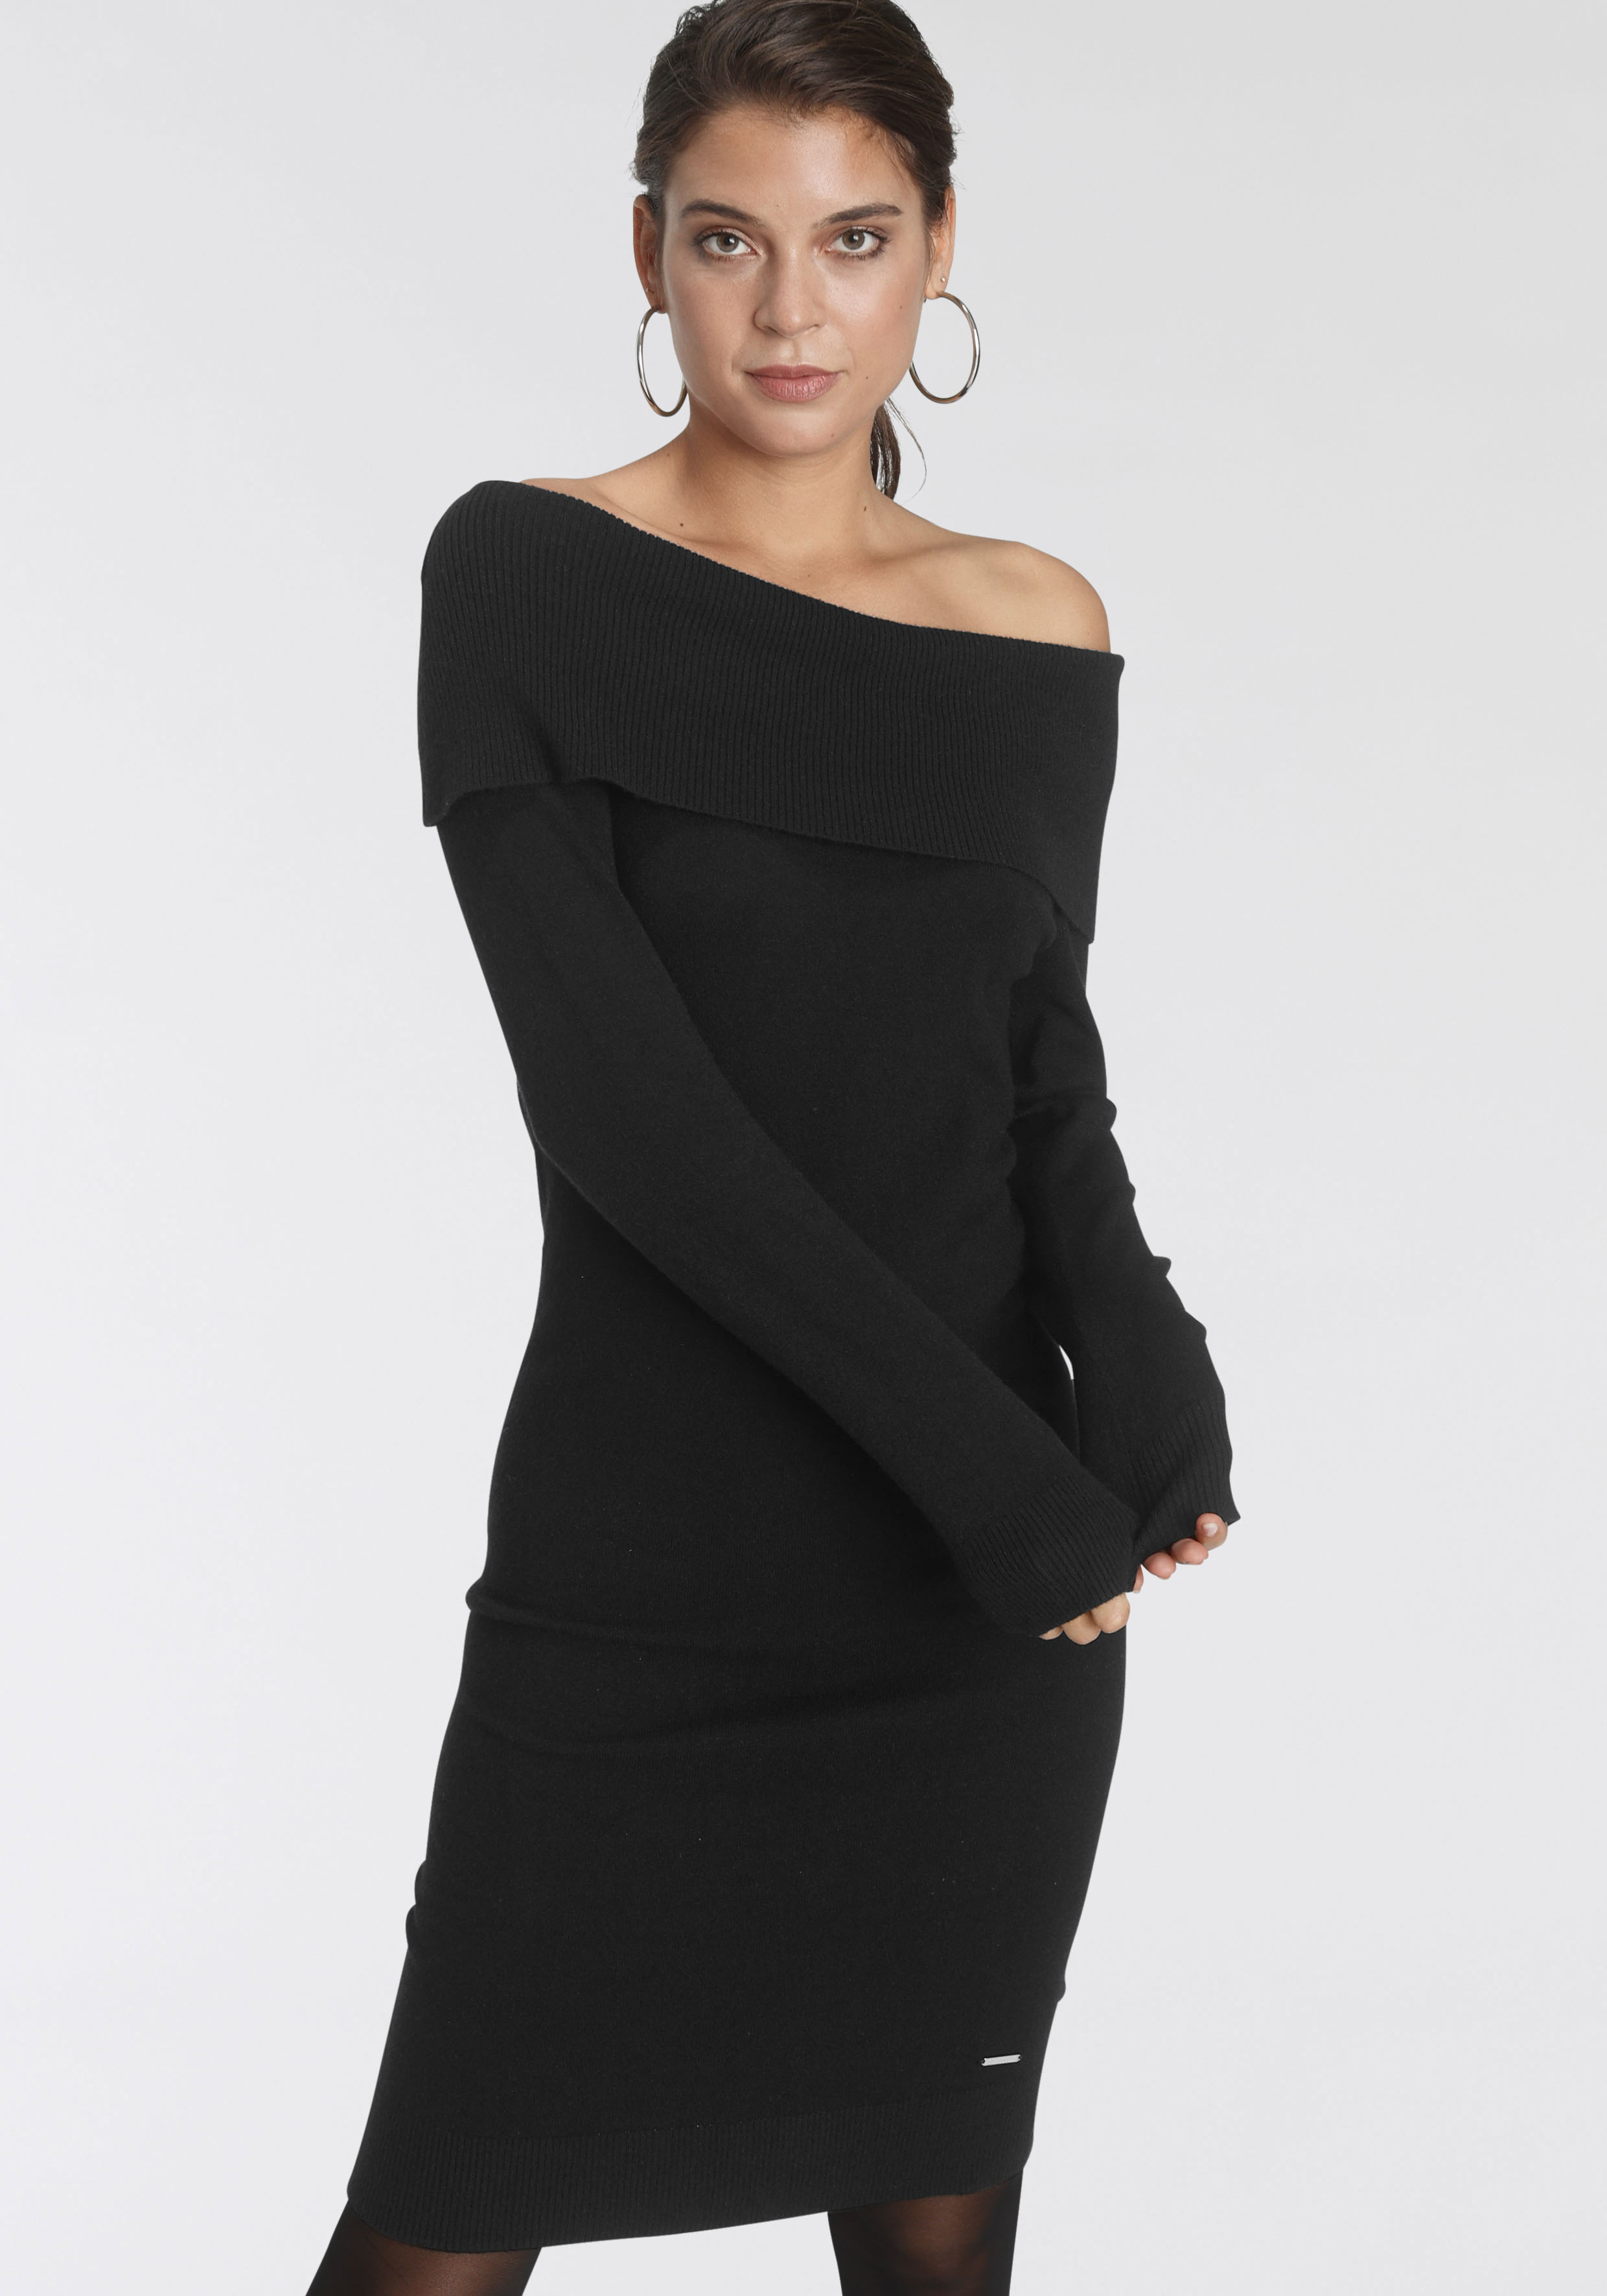 Schwarzes Kleid kaufen online günstig